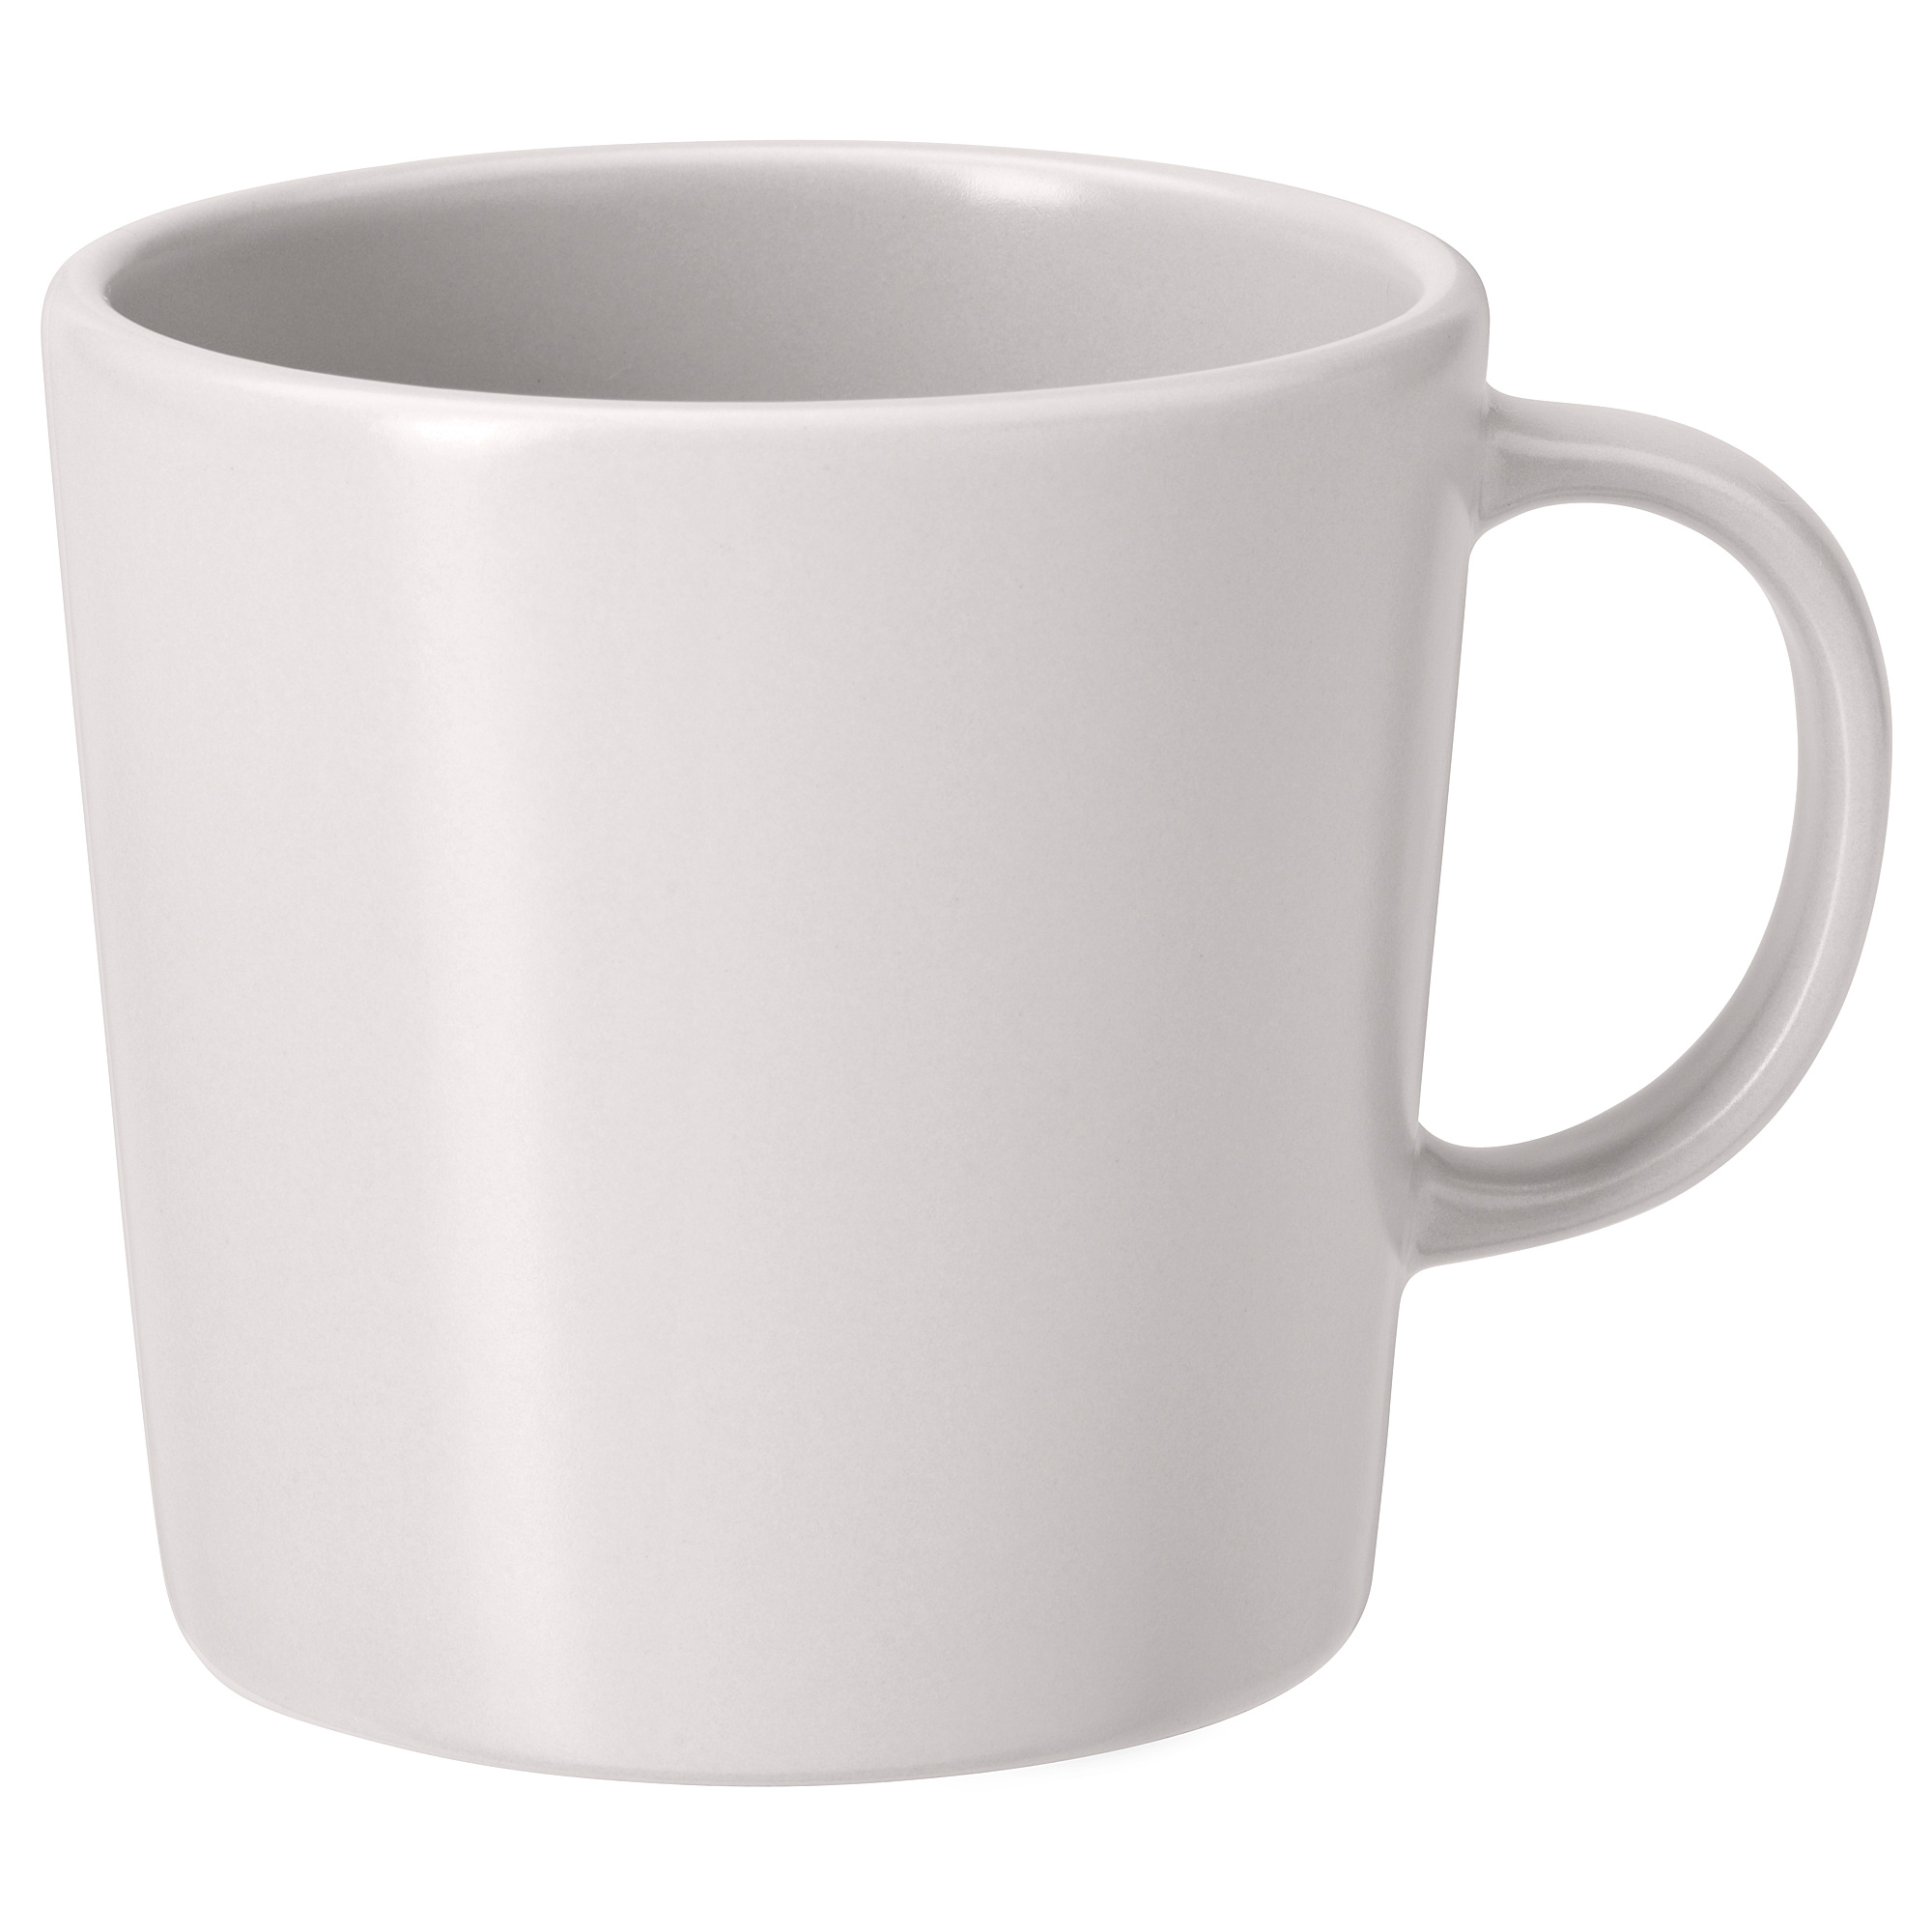 DINERA mug